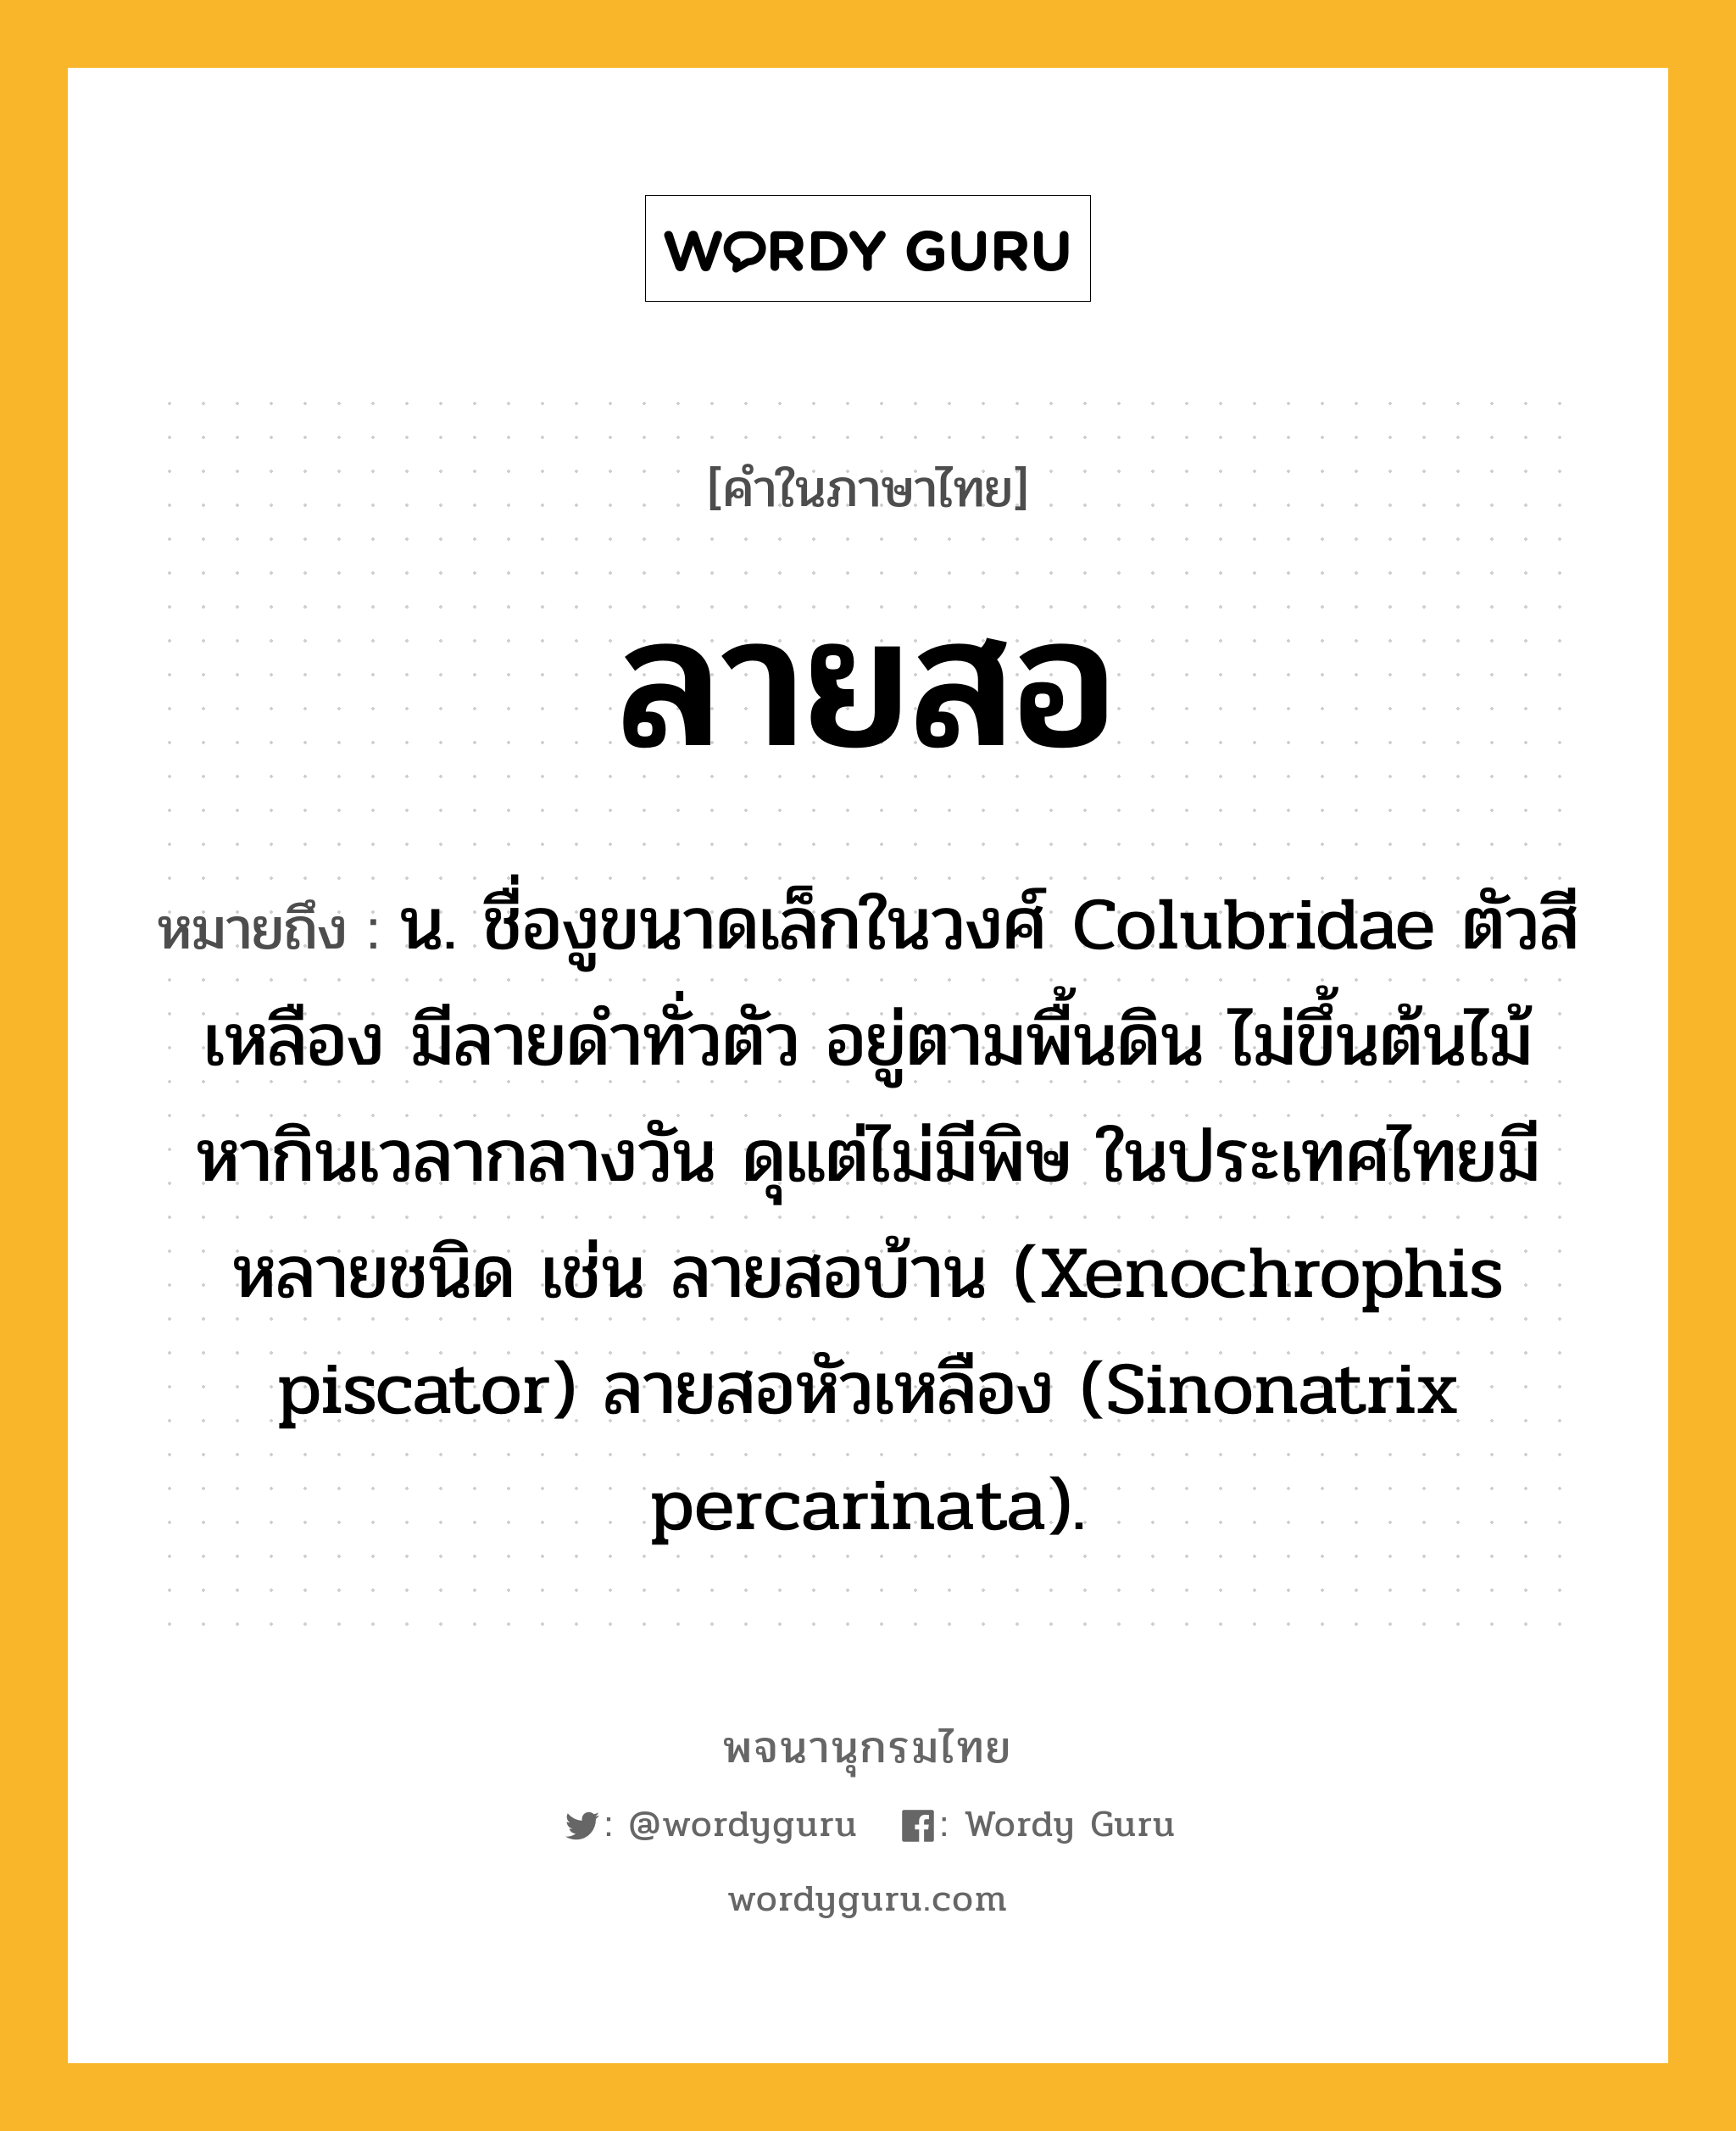 ลายสอ หมายถึงอะไร?, คำในภาษาไทย ลายสอ หมายถึง น. ชื่องูขนาดเล็กในวงศ์ Colubridae ตัวสีเหลือง มีลายดําทั่วตัว อยู่ตามพื้นดิน ไม่ขึ้นต้นไม้ หากินเวลากลางวัน ดุแต่ไม่มีพิษ ในประเทศไทยมีหลายชนิด เช่น ลายสอบ้าน (Xenochrophis piscator) ลายสอหัวเหลือง (Sinonatrix percarinata).